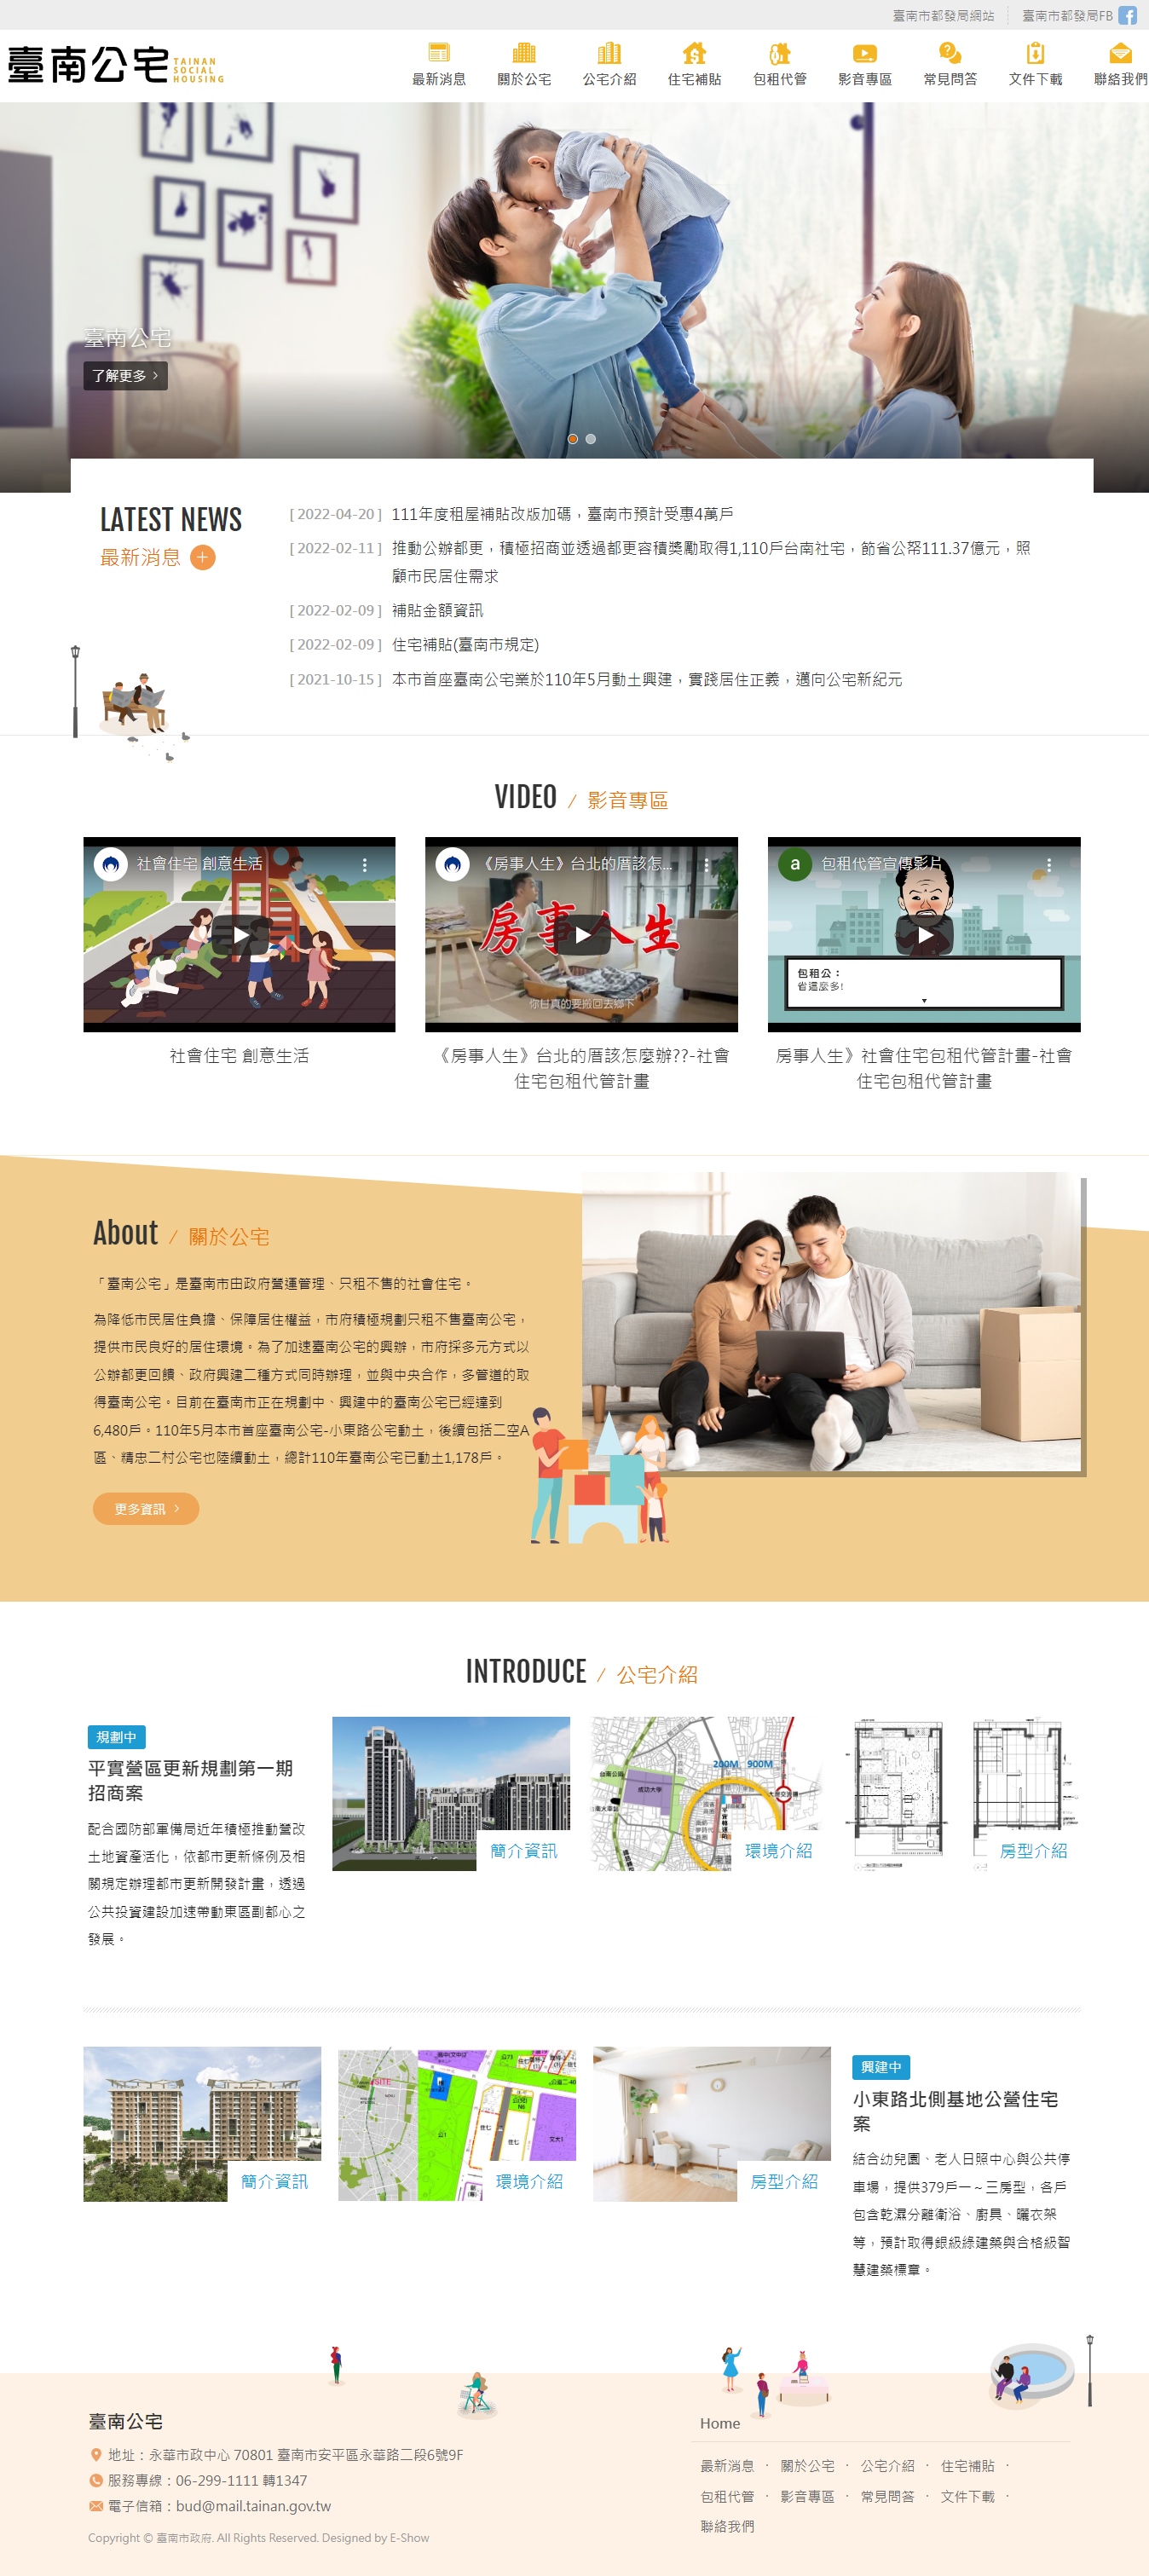 臺南公宅 民生機構RWD網站
網站設計